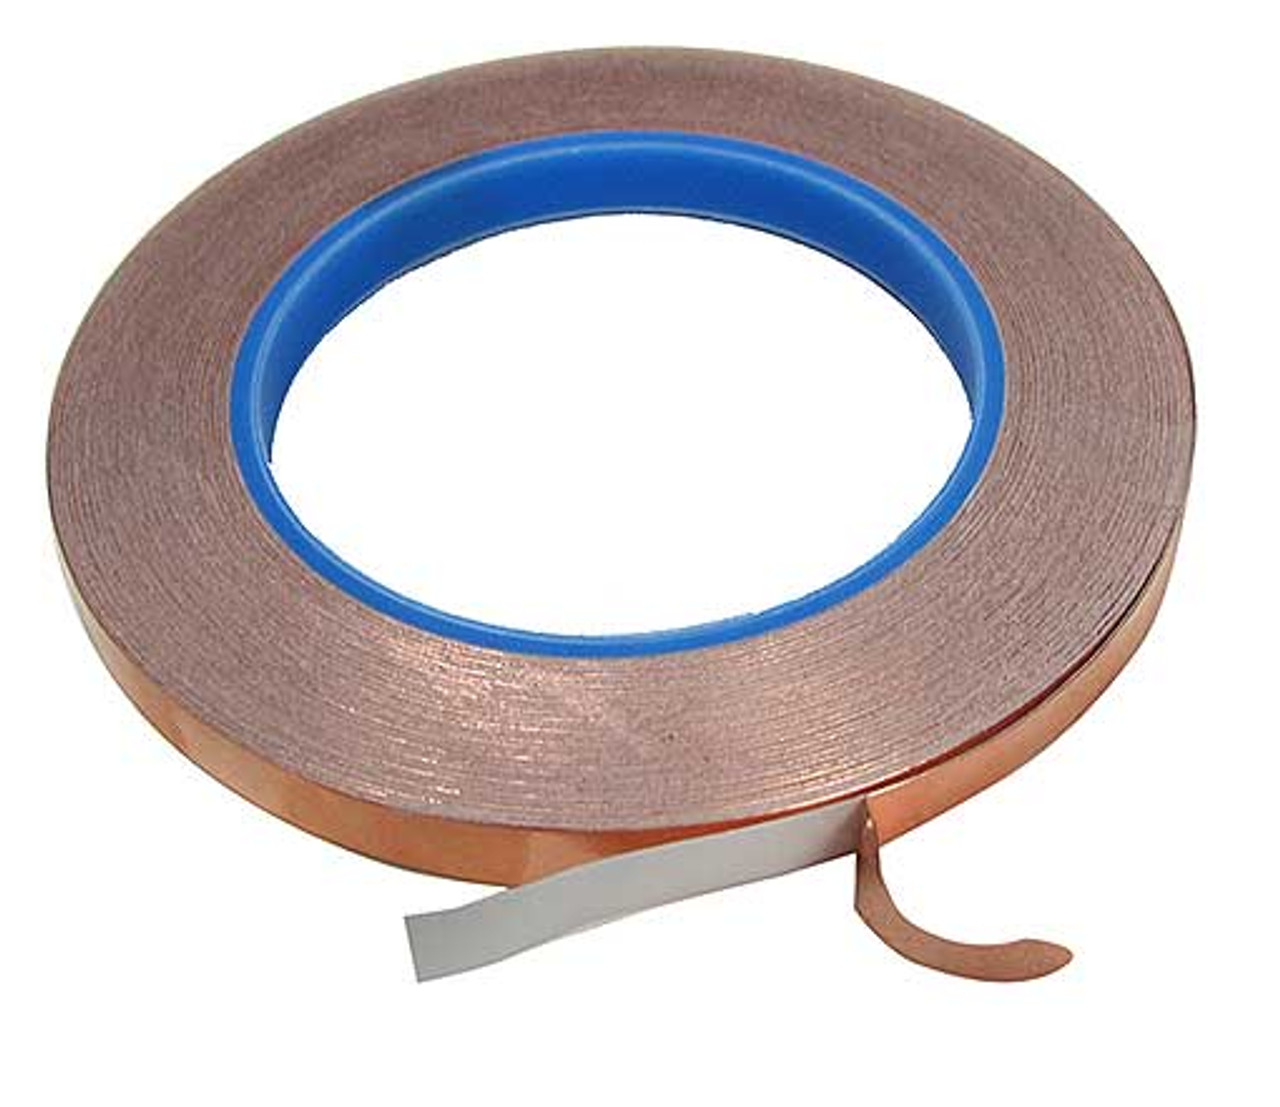 Conductive copper tape